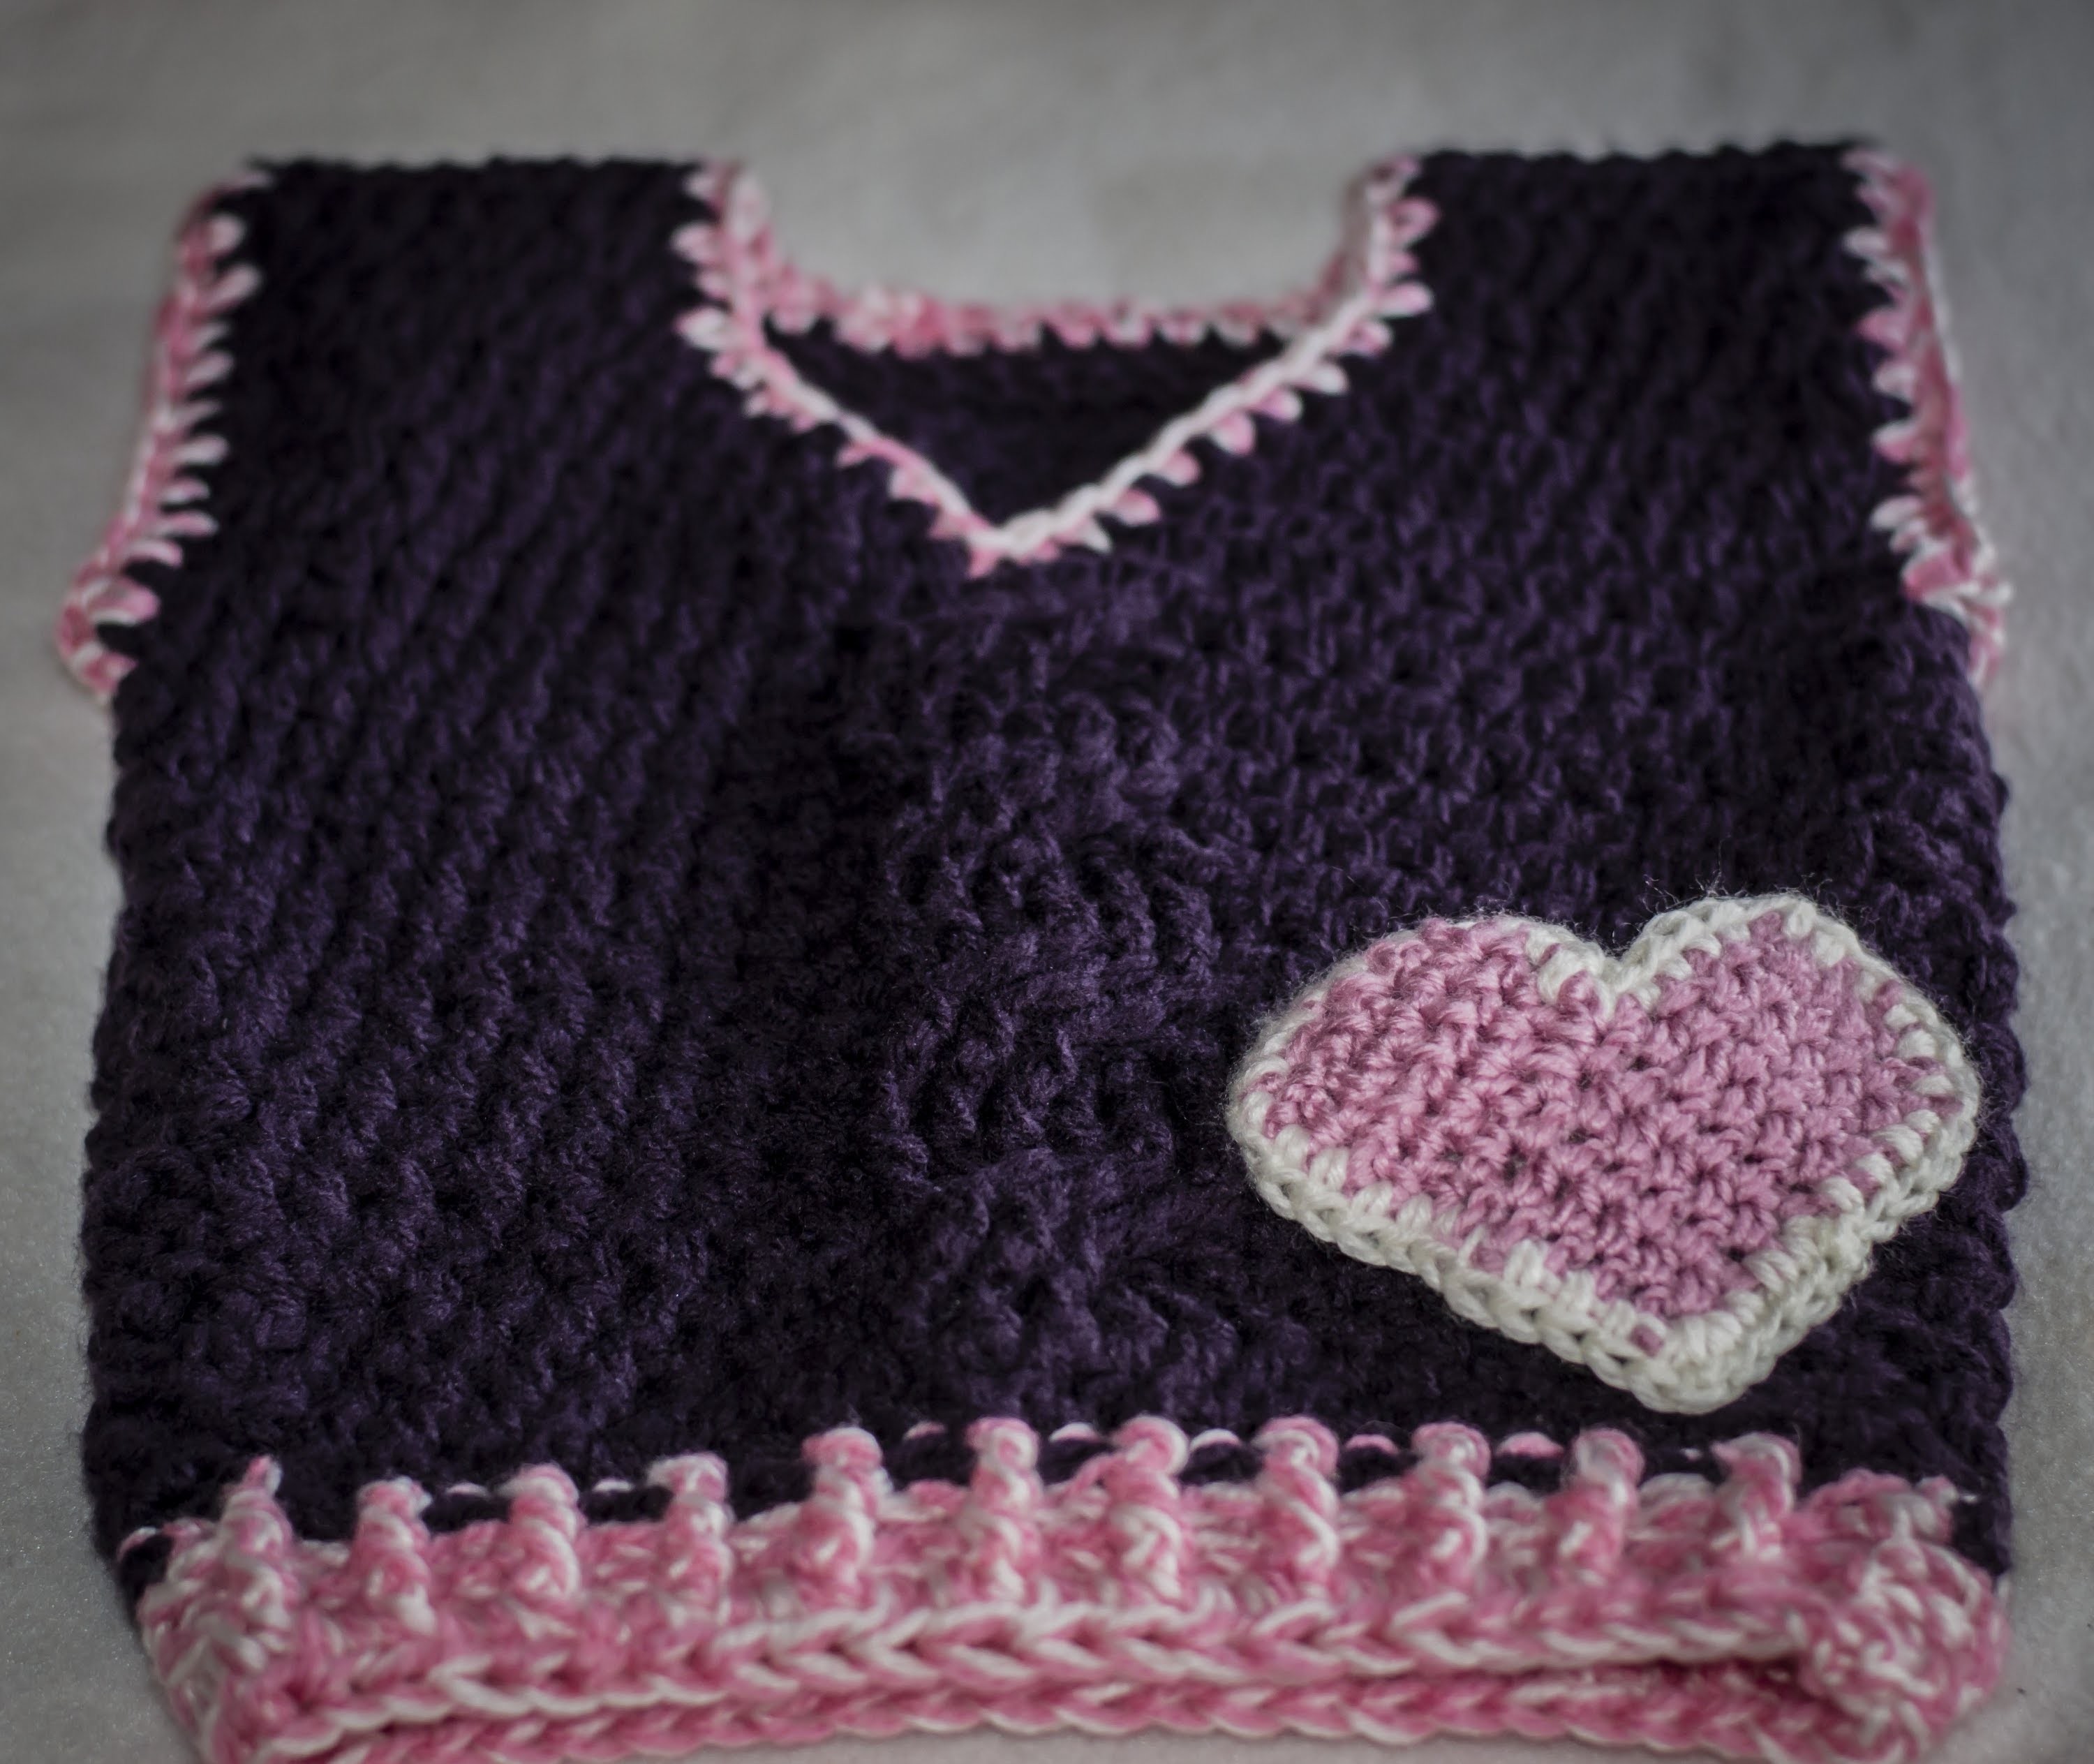 Kamizelka na szydełku cz  2+ ścieg warkocz. crochet vest part 1+ braid stitch crochet